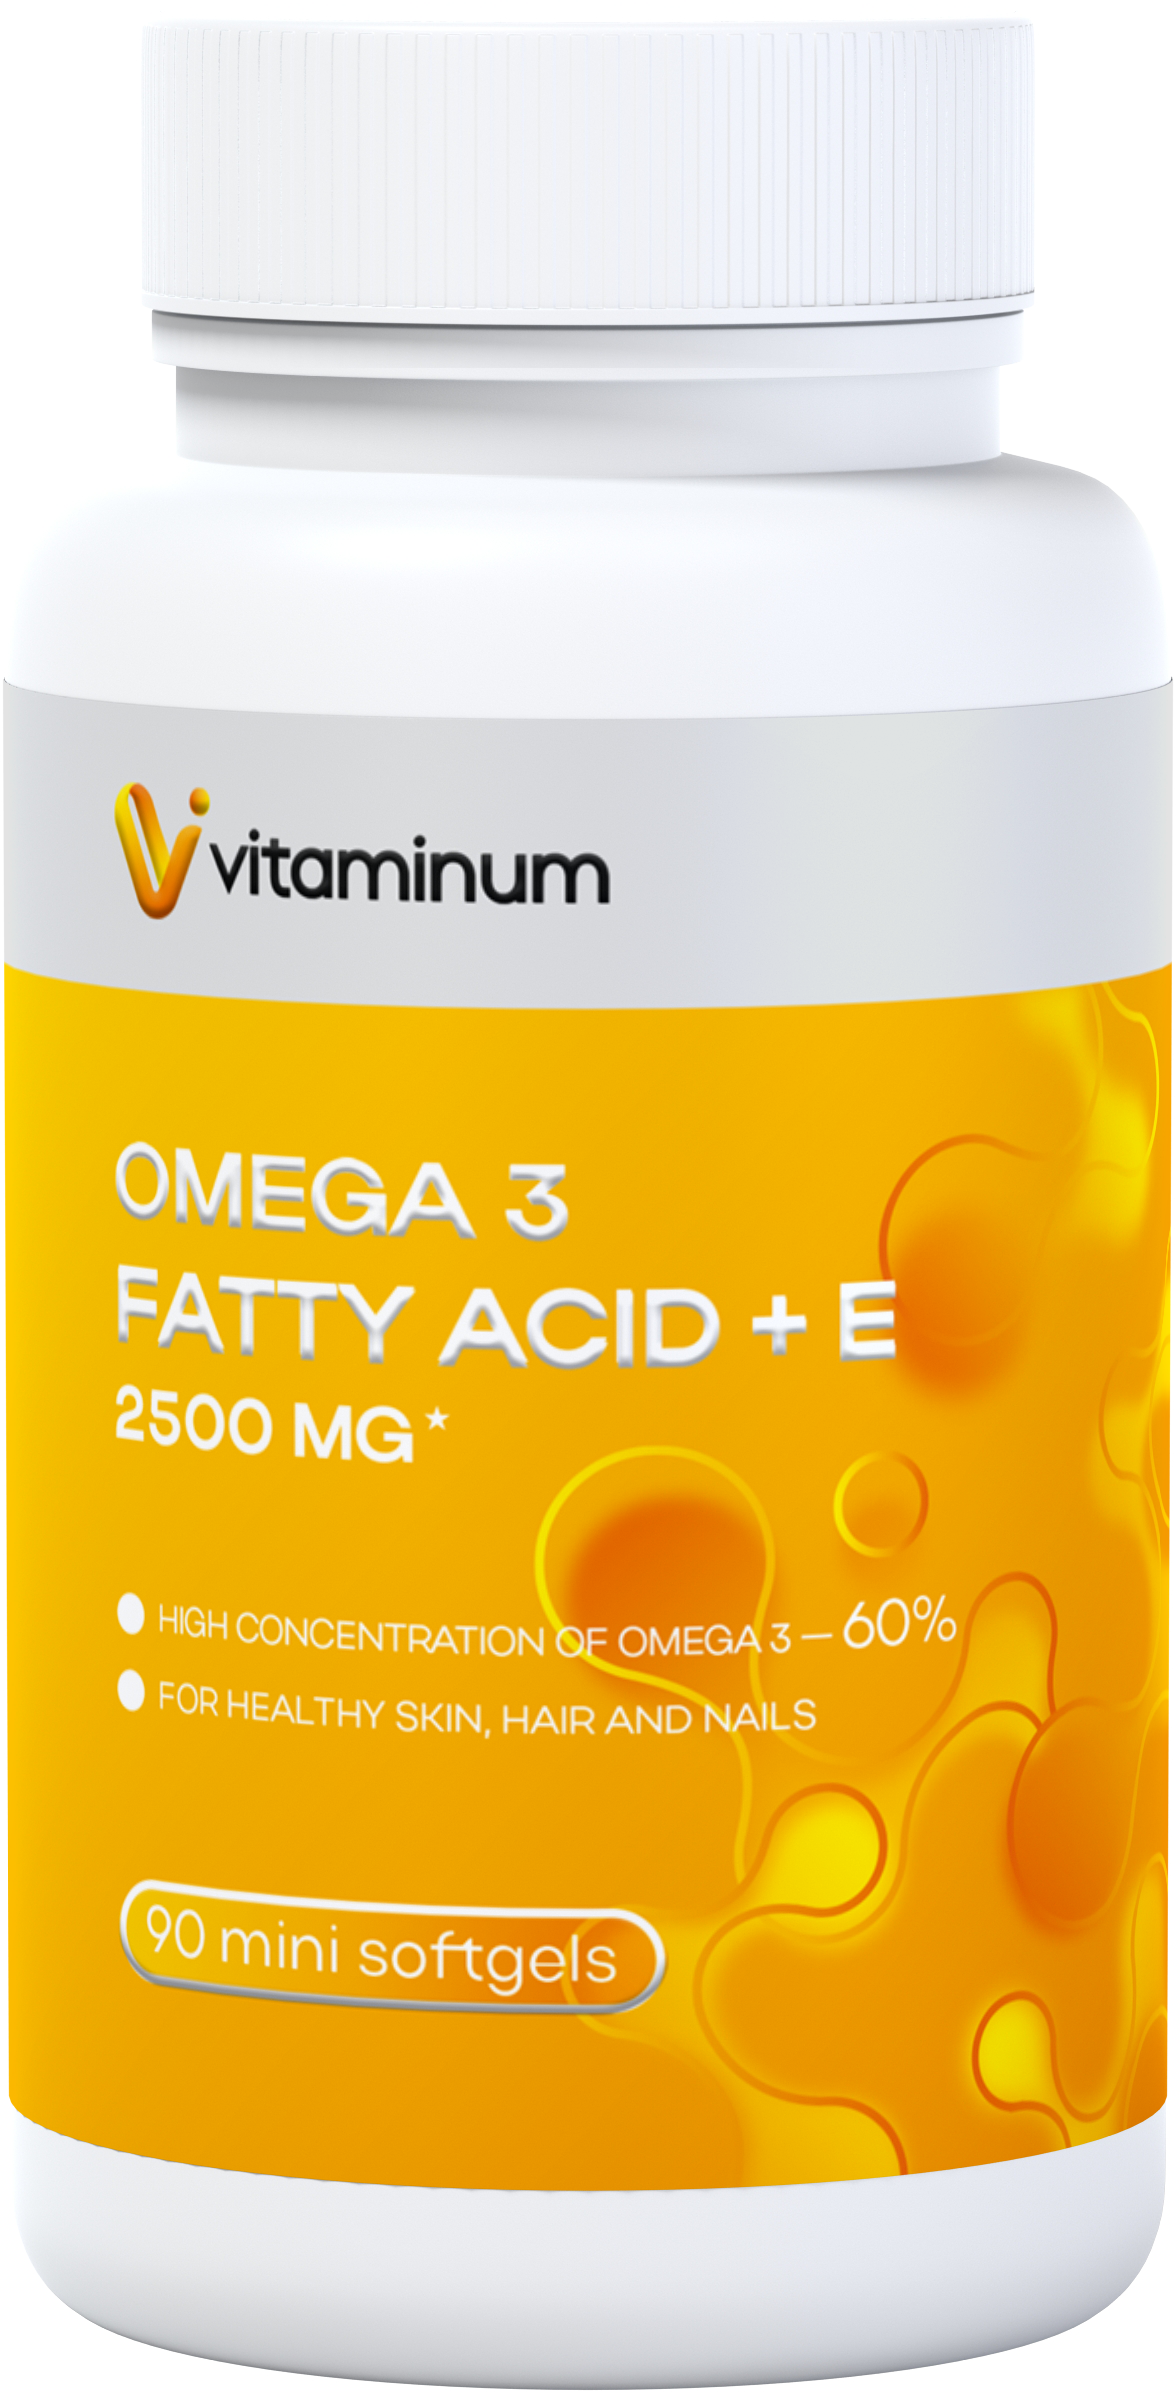  Vitaminum ОМЕГА 3 60% + витамин Е (2500 MG*) 90 капсул 700 мг   в Липецке